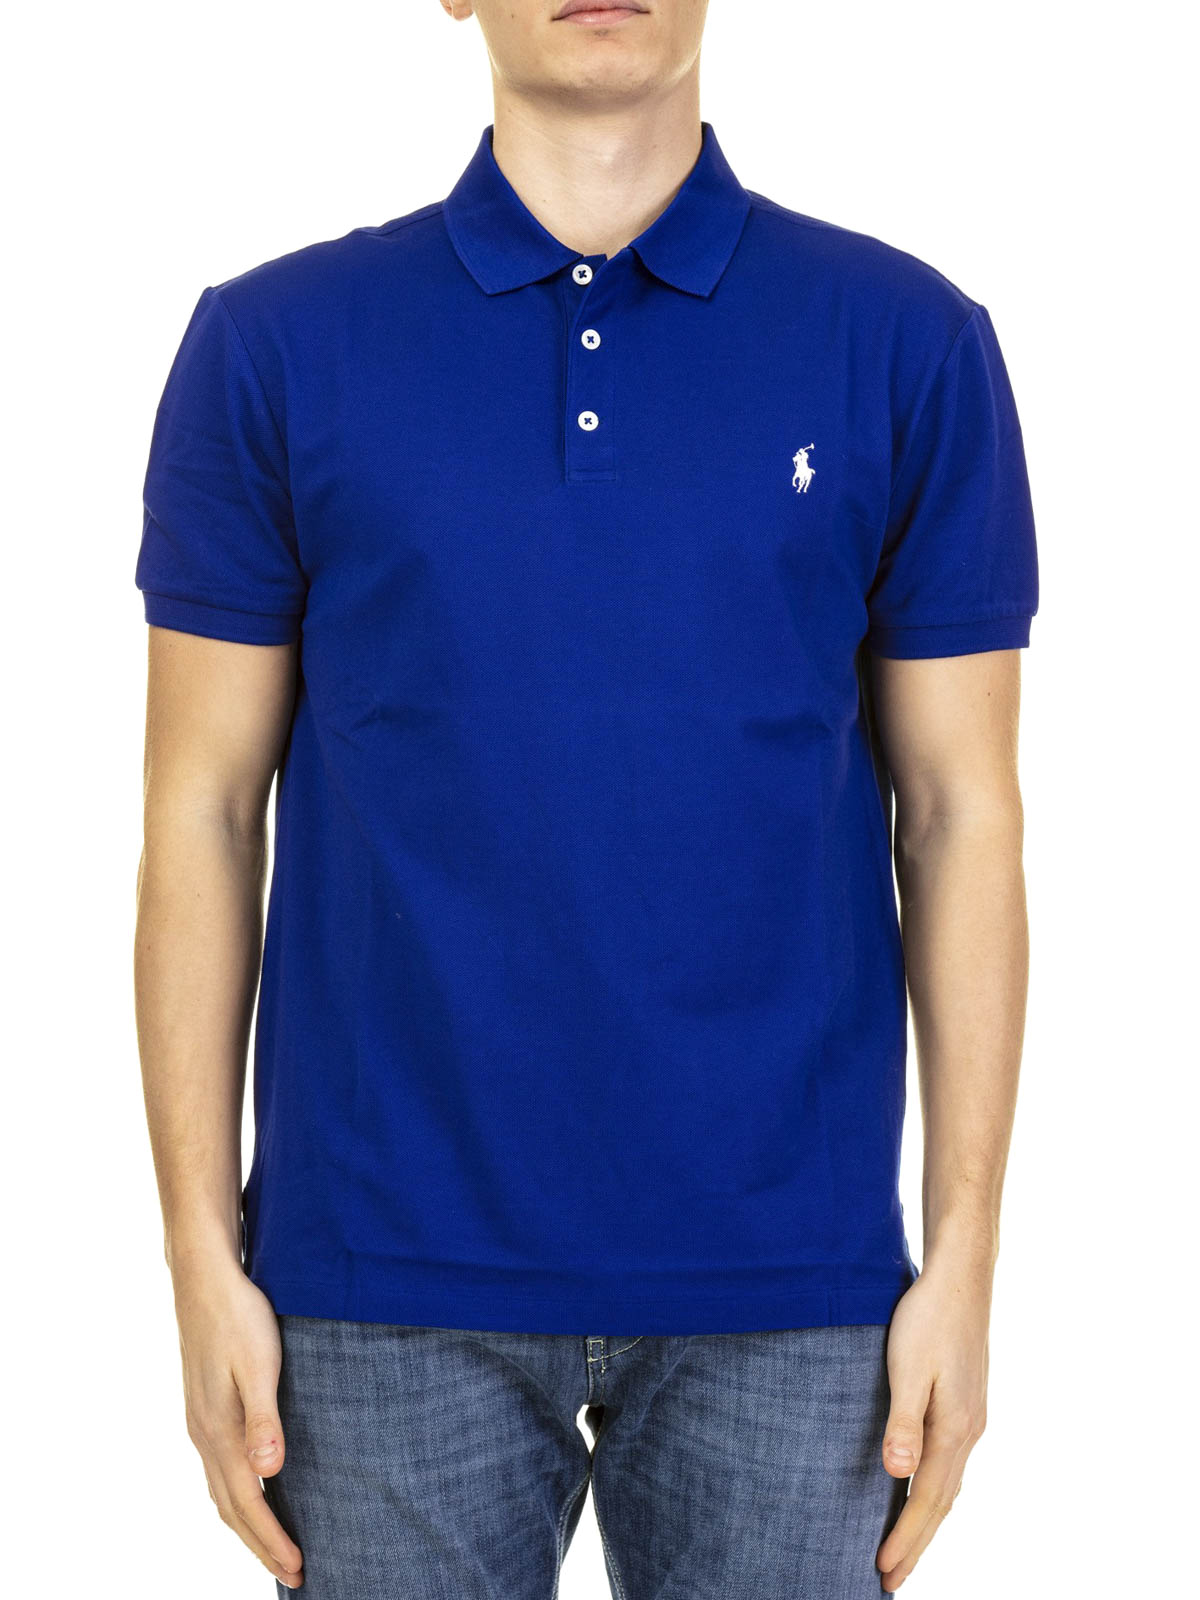 Polo shirts Polo cotton Logo - - polo 710541705112 Lauren royal Ralph shirt pique blue